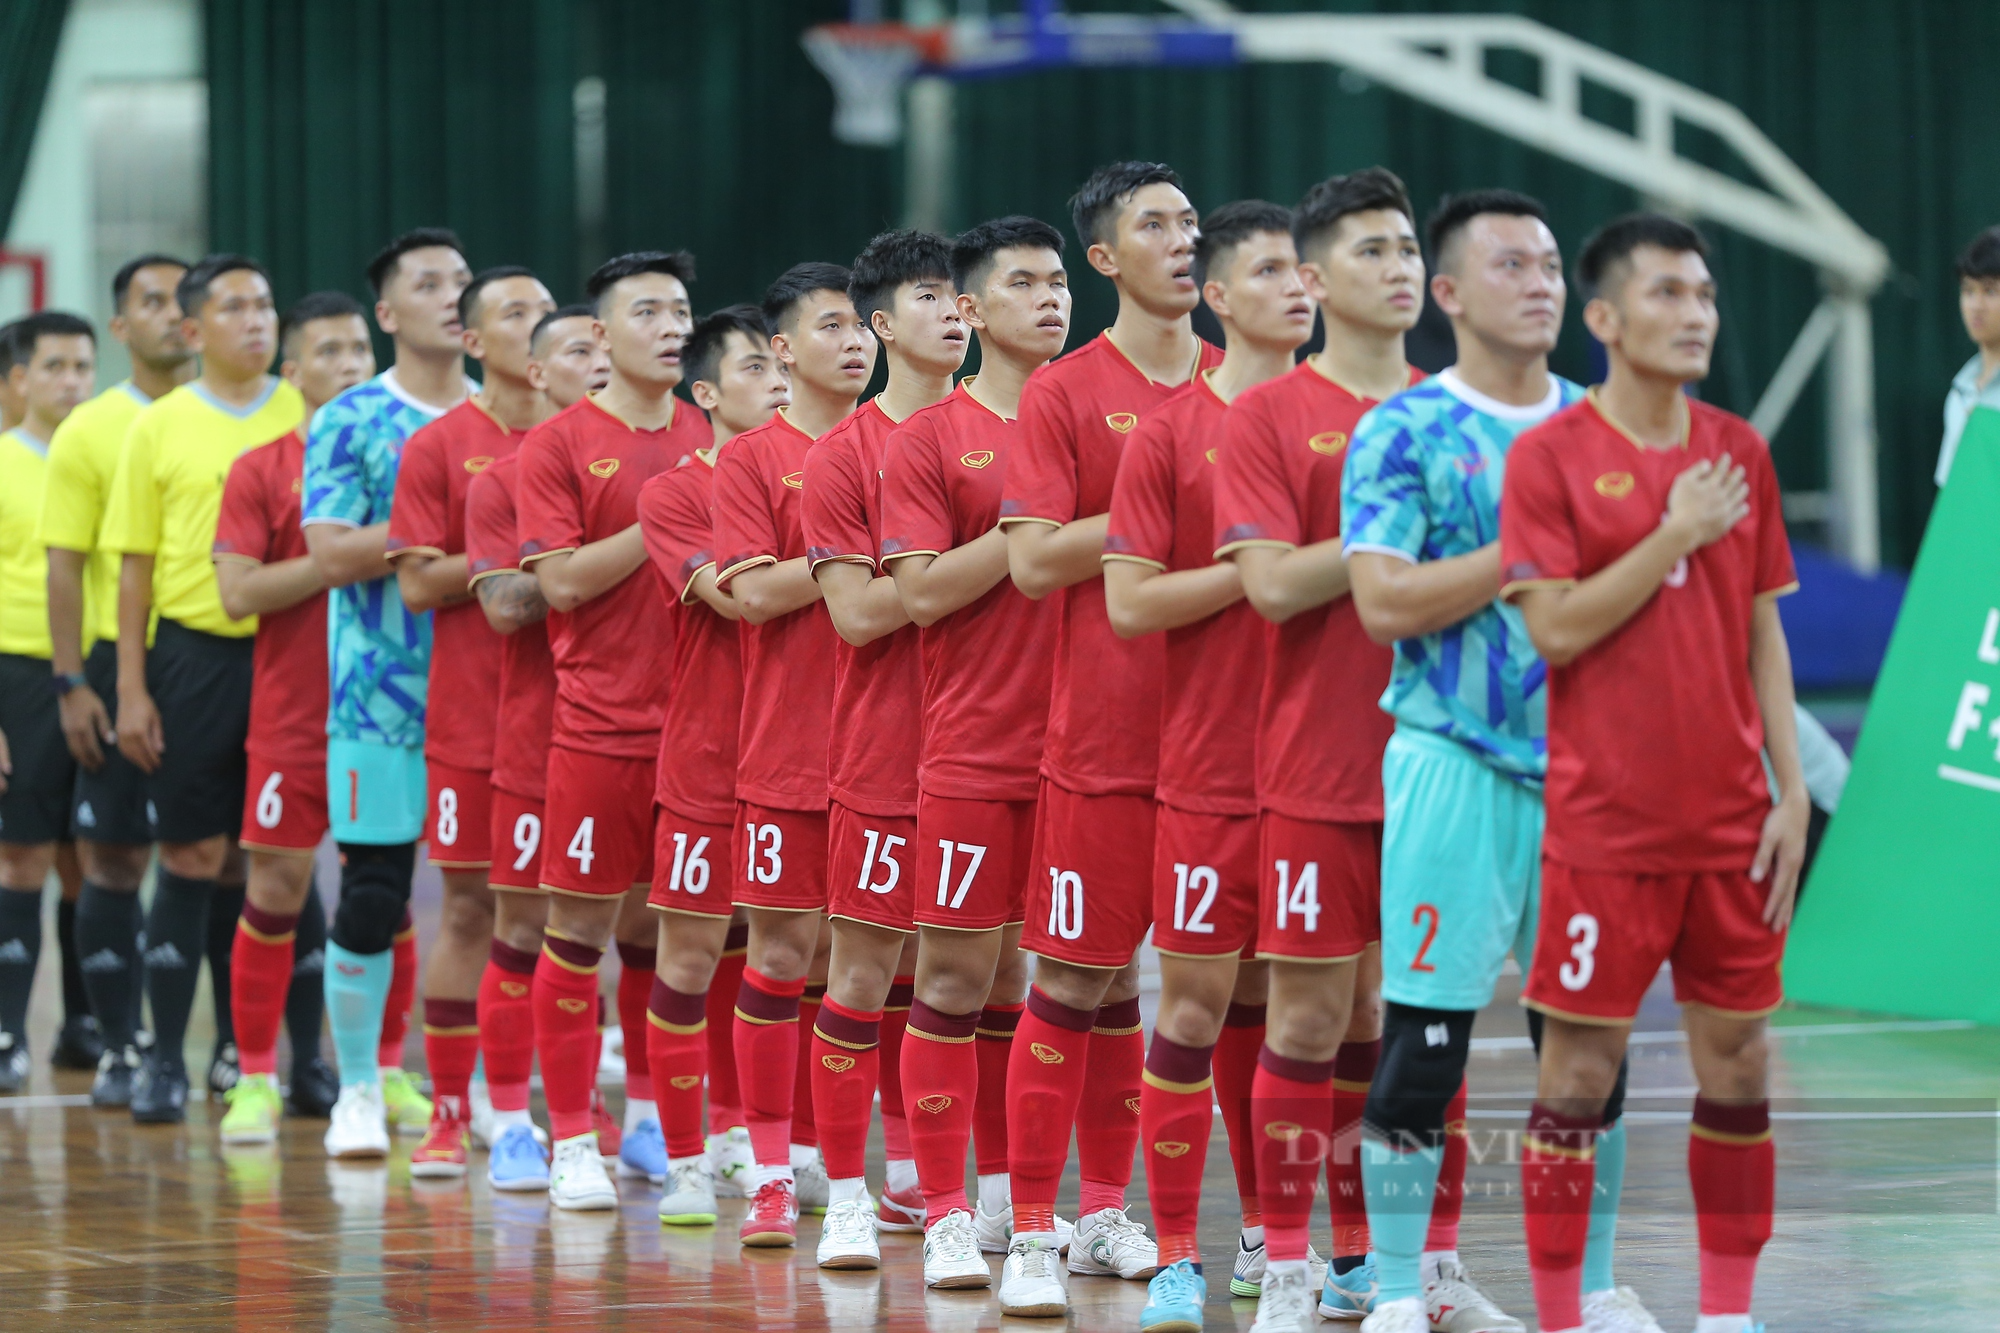 Tân đội trưởng ghi bàn phút cuối, futsal Việt Nam kịch tính cầm hoà đội hạng 4 thế giới - Ảnh 1.